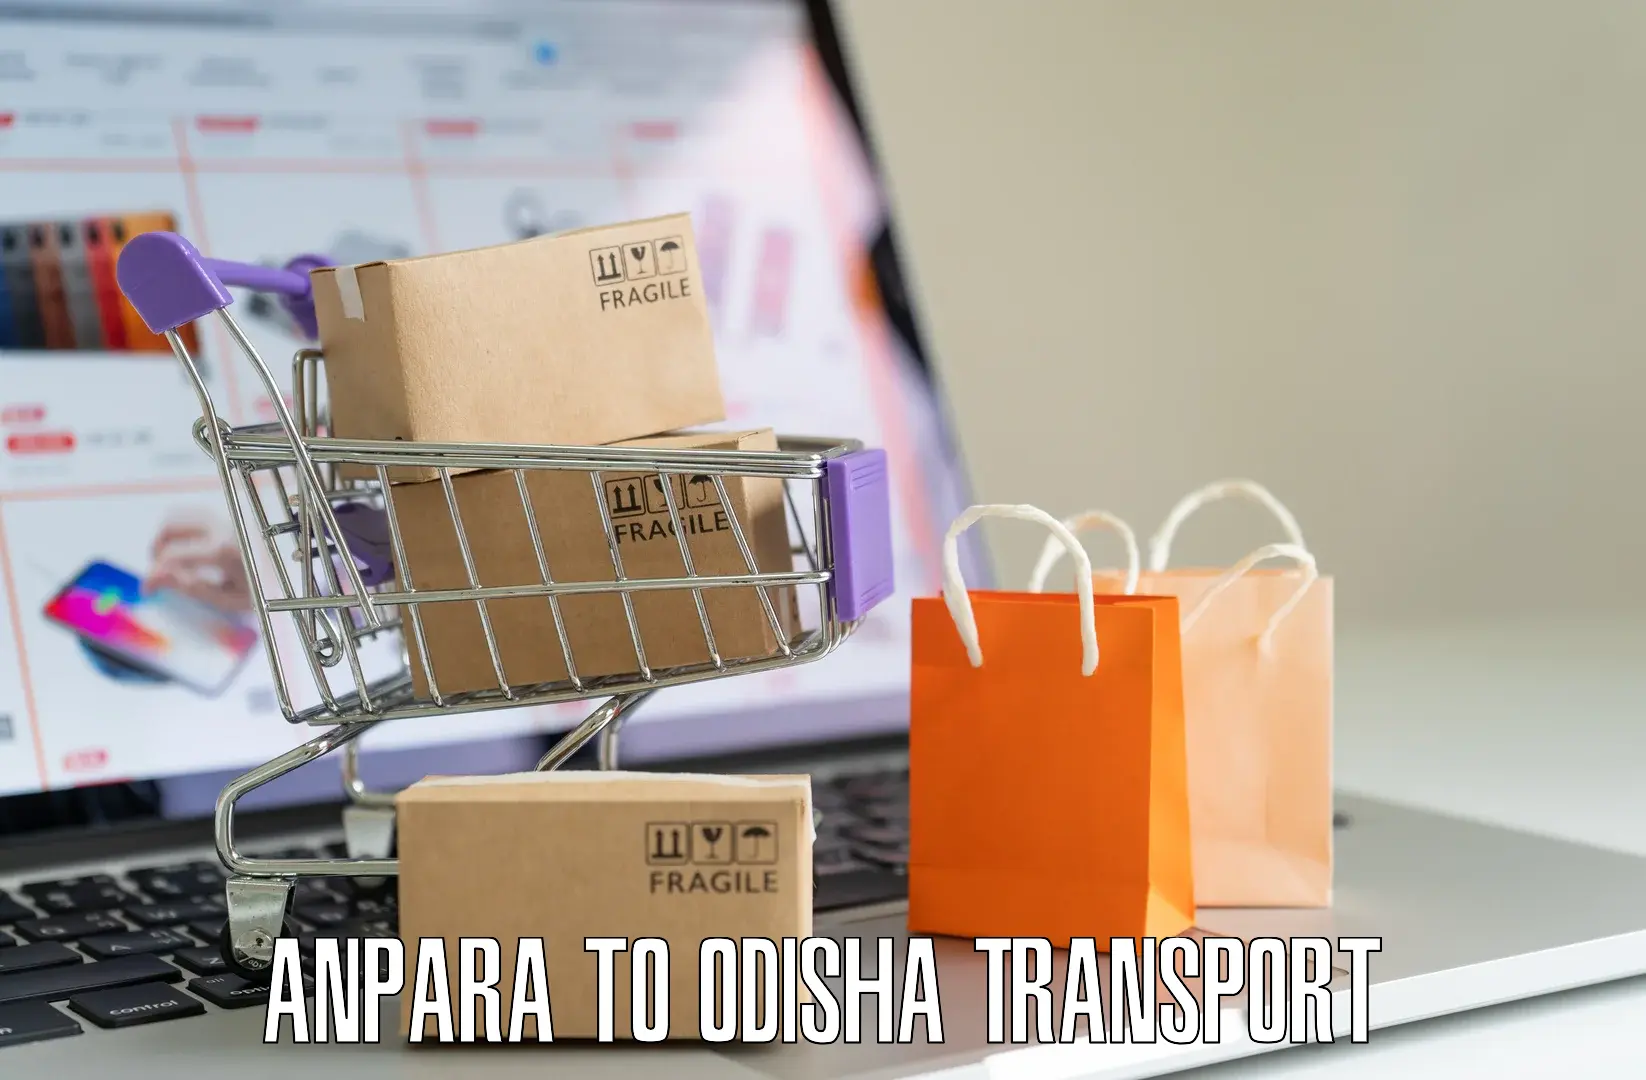 Transport in sharing in Anpara to Bhutasarasingi